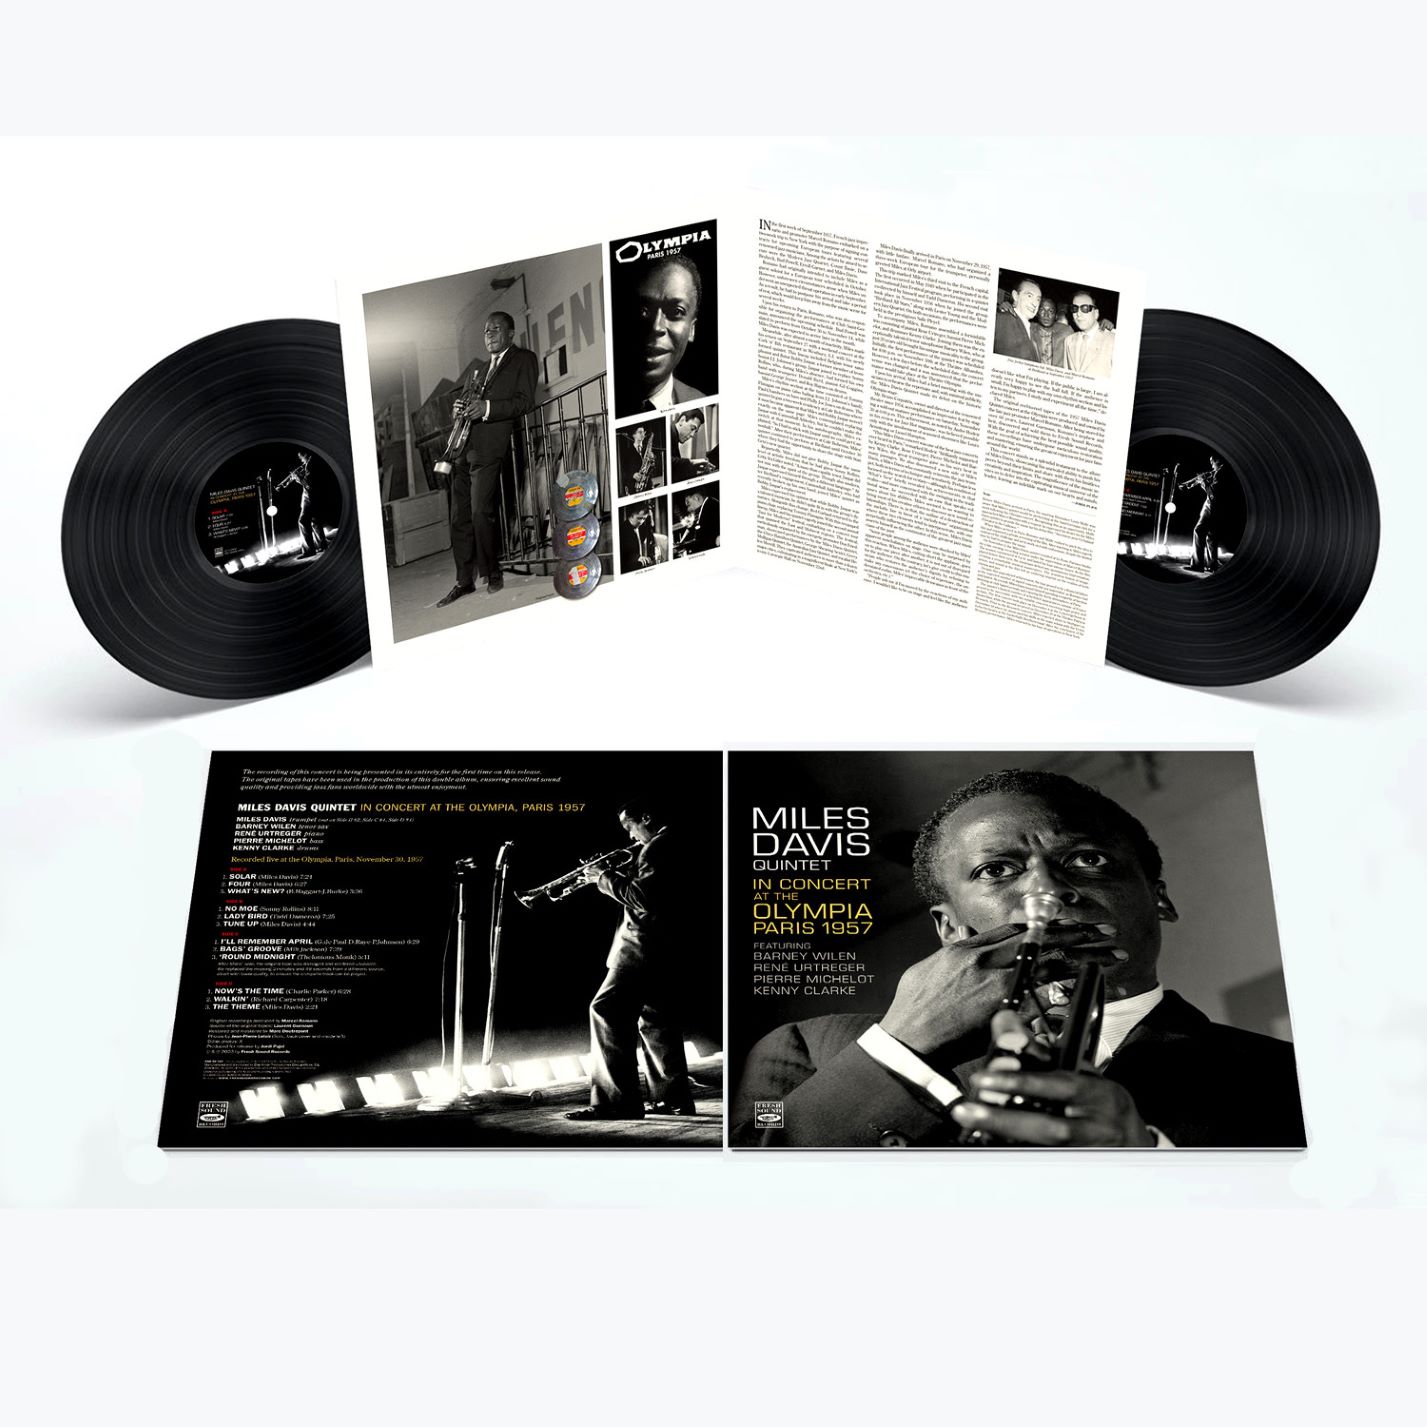 Miles Davis マイルスデイビス LP レコード盤 2枚組み-